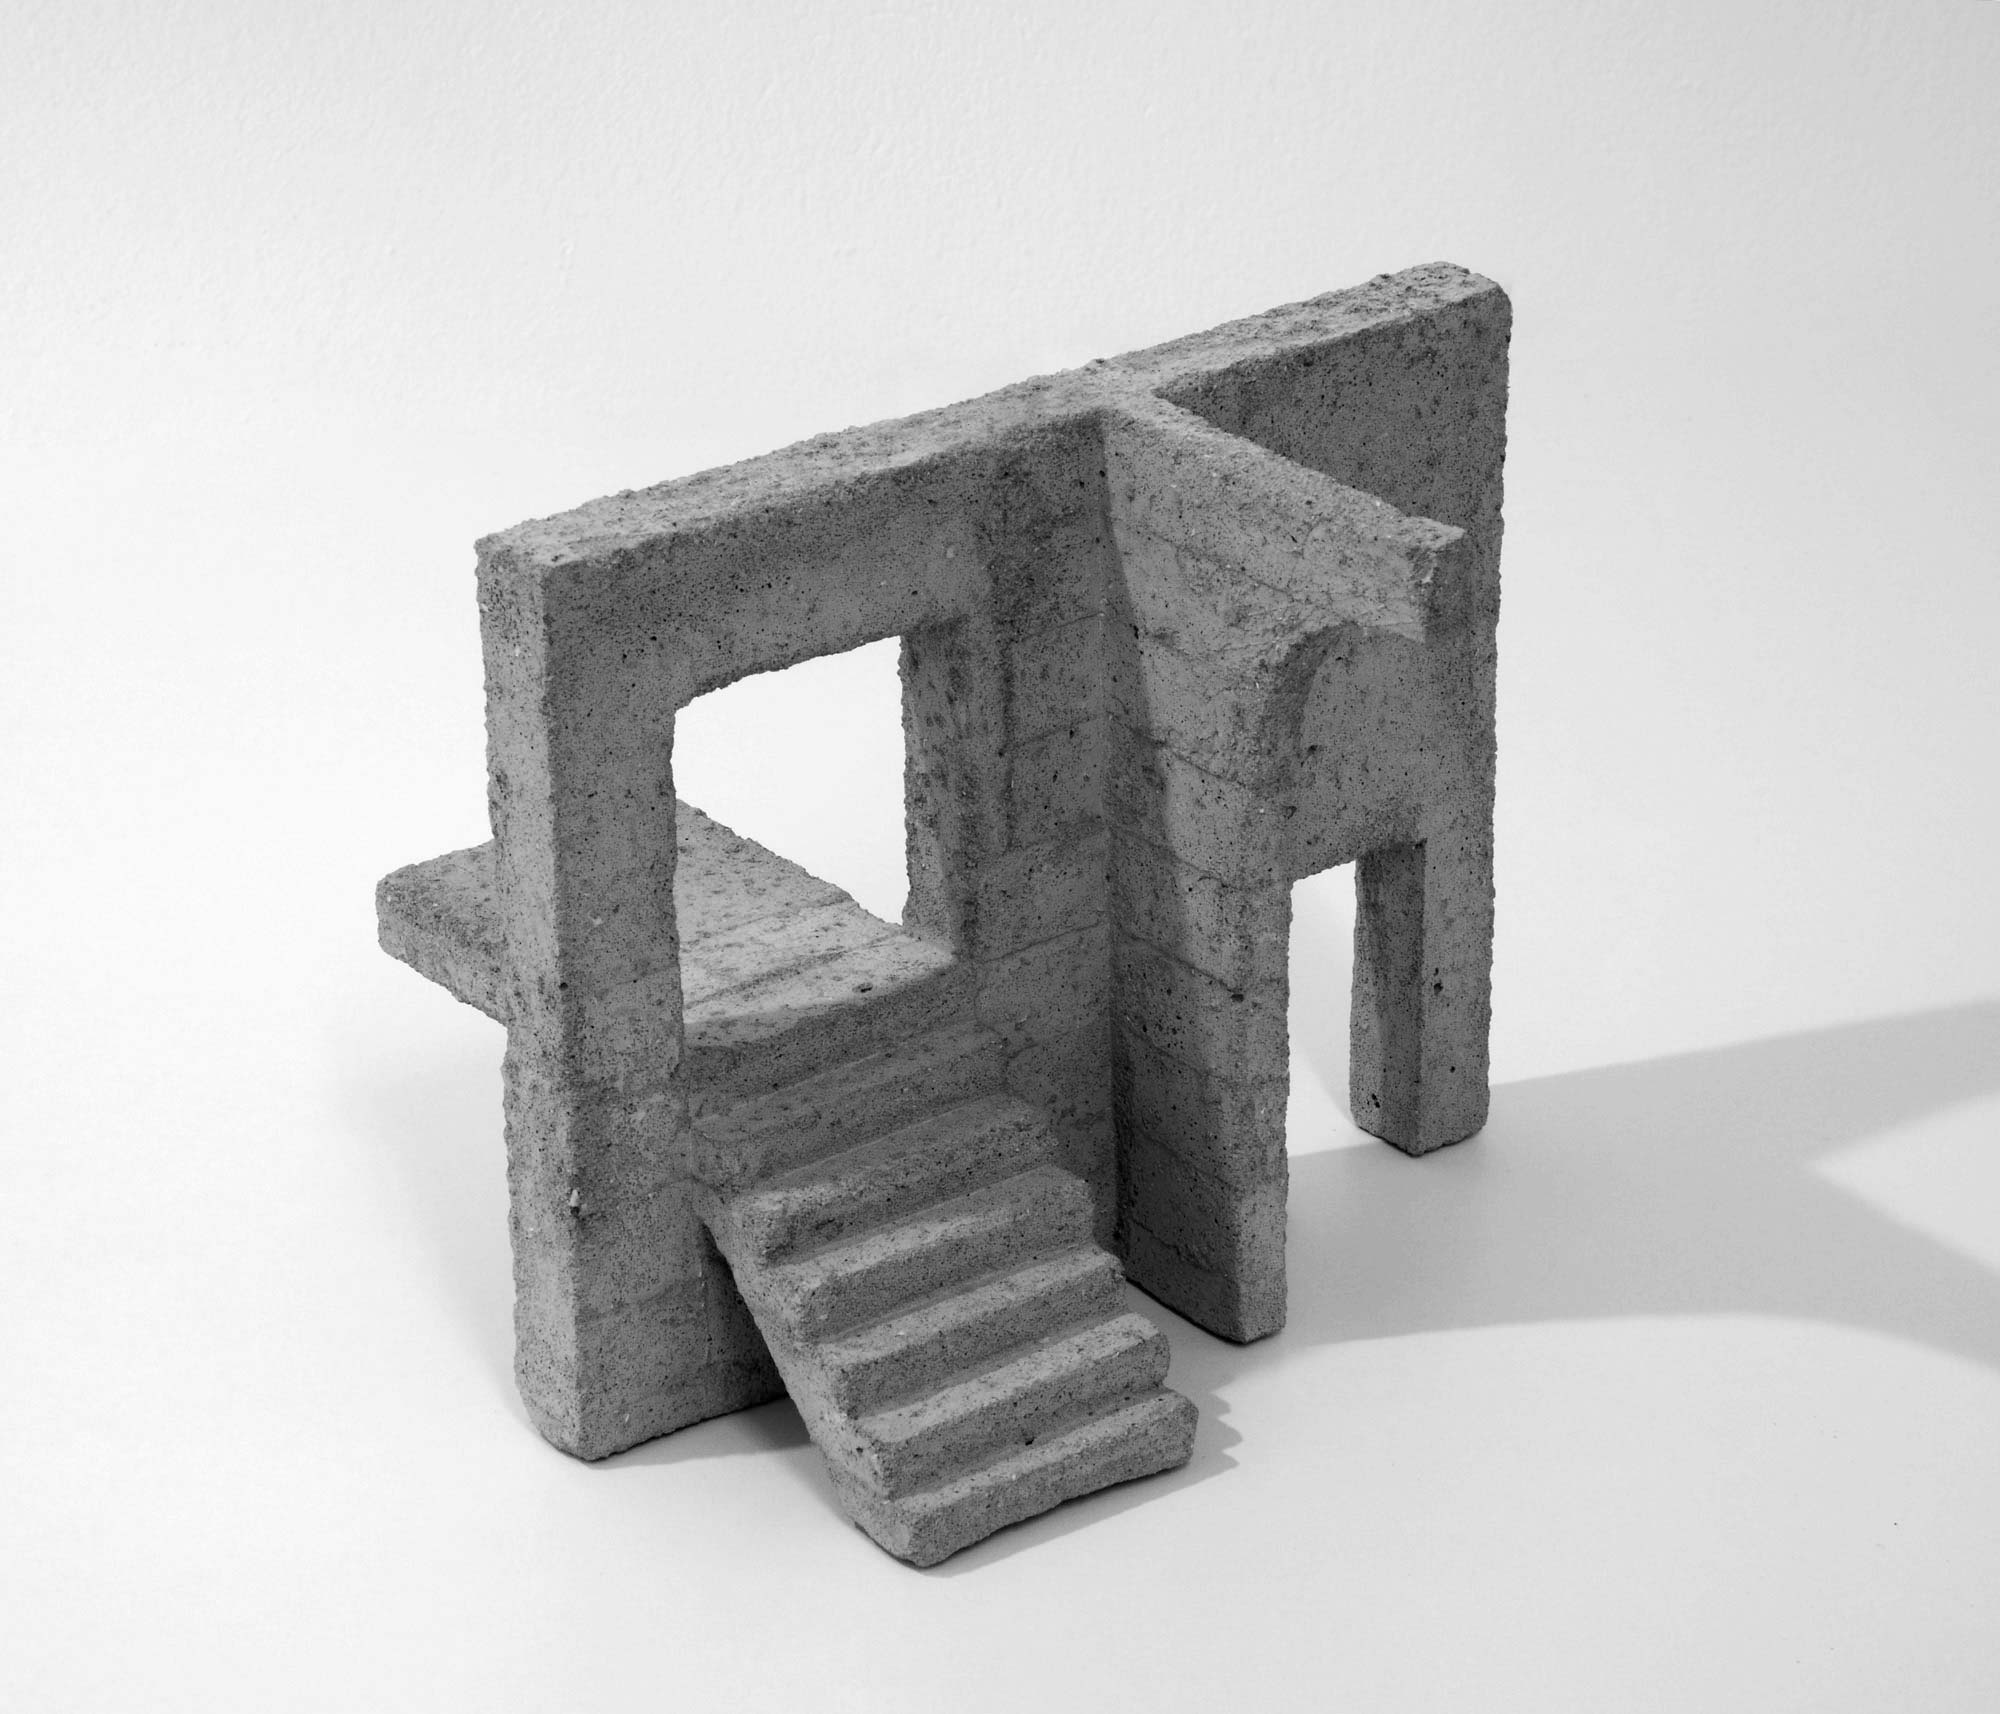 mattia listowski art design objet décoration sculpture béton moulage micro architecture maquette passage 2 édition limitée numérotée signée paris bruxelles 2019